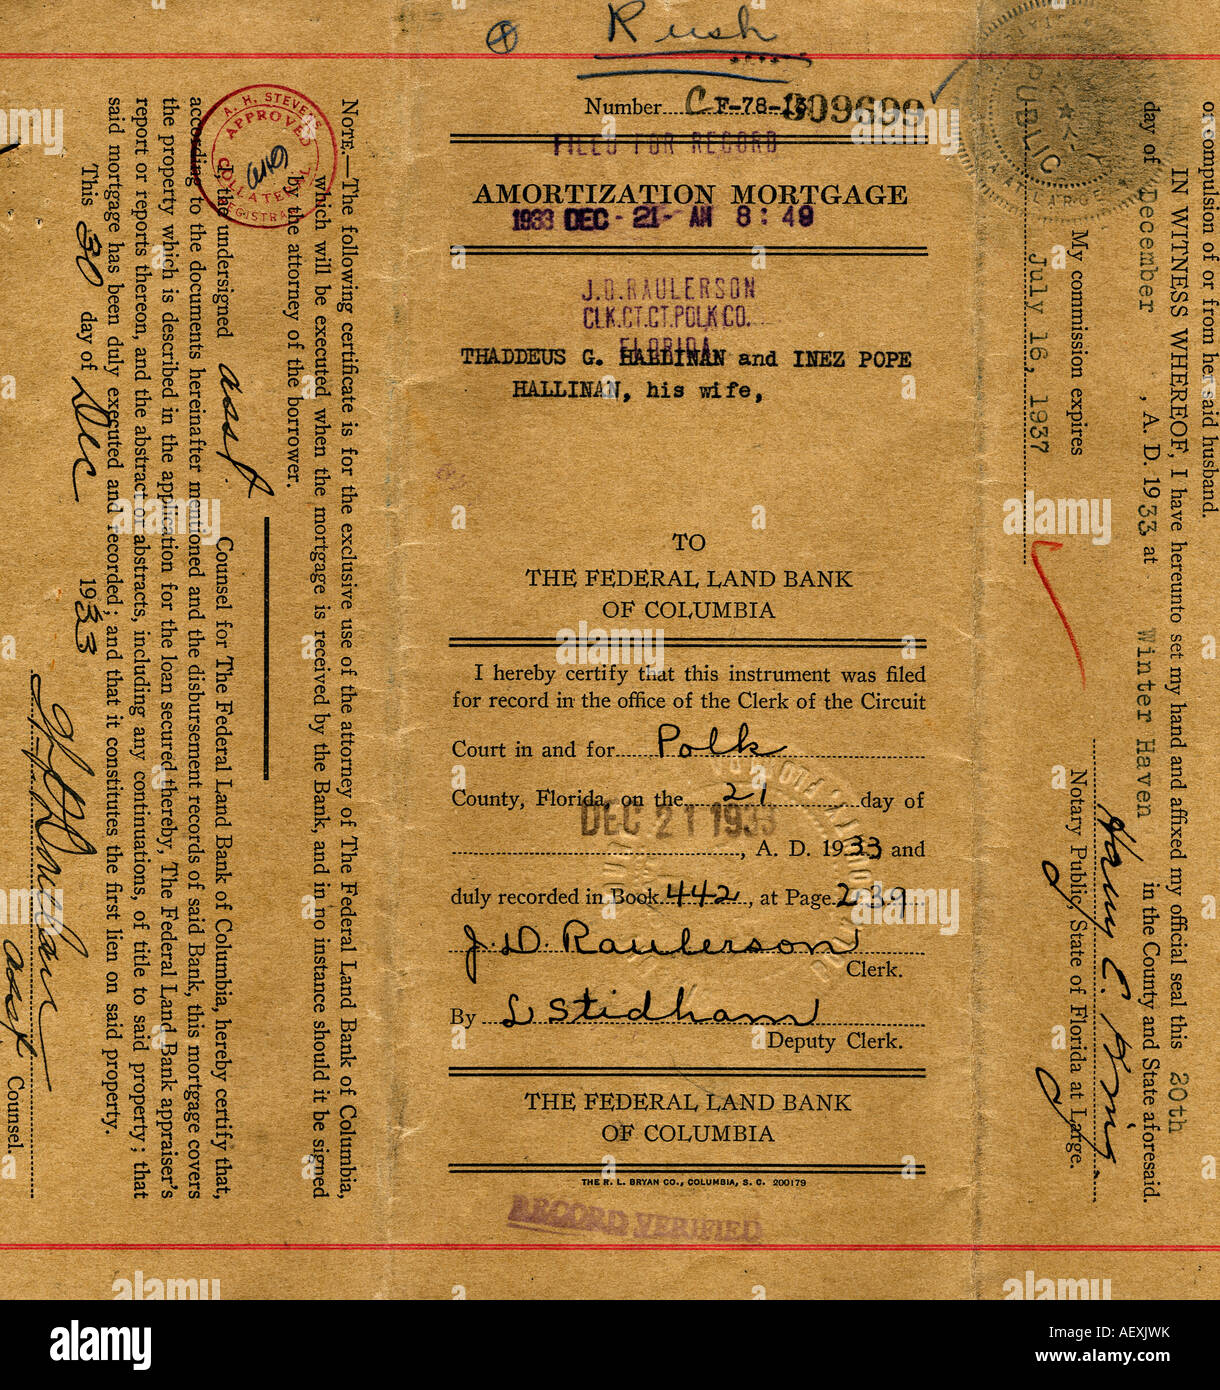 Amortissement très vieux document hypothécaire vers 1933 pour un quartier résidentiel maison en Floride Banque D'Images